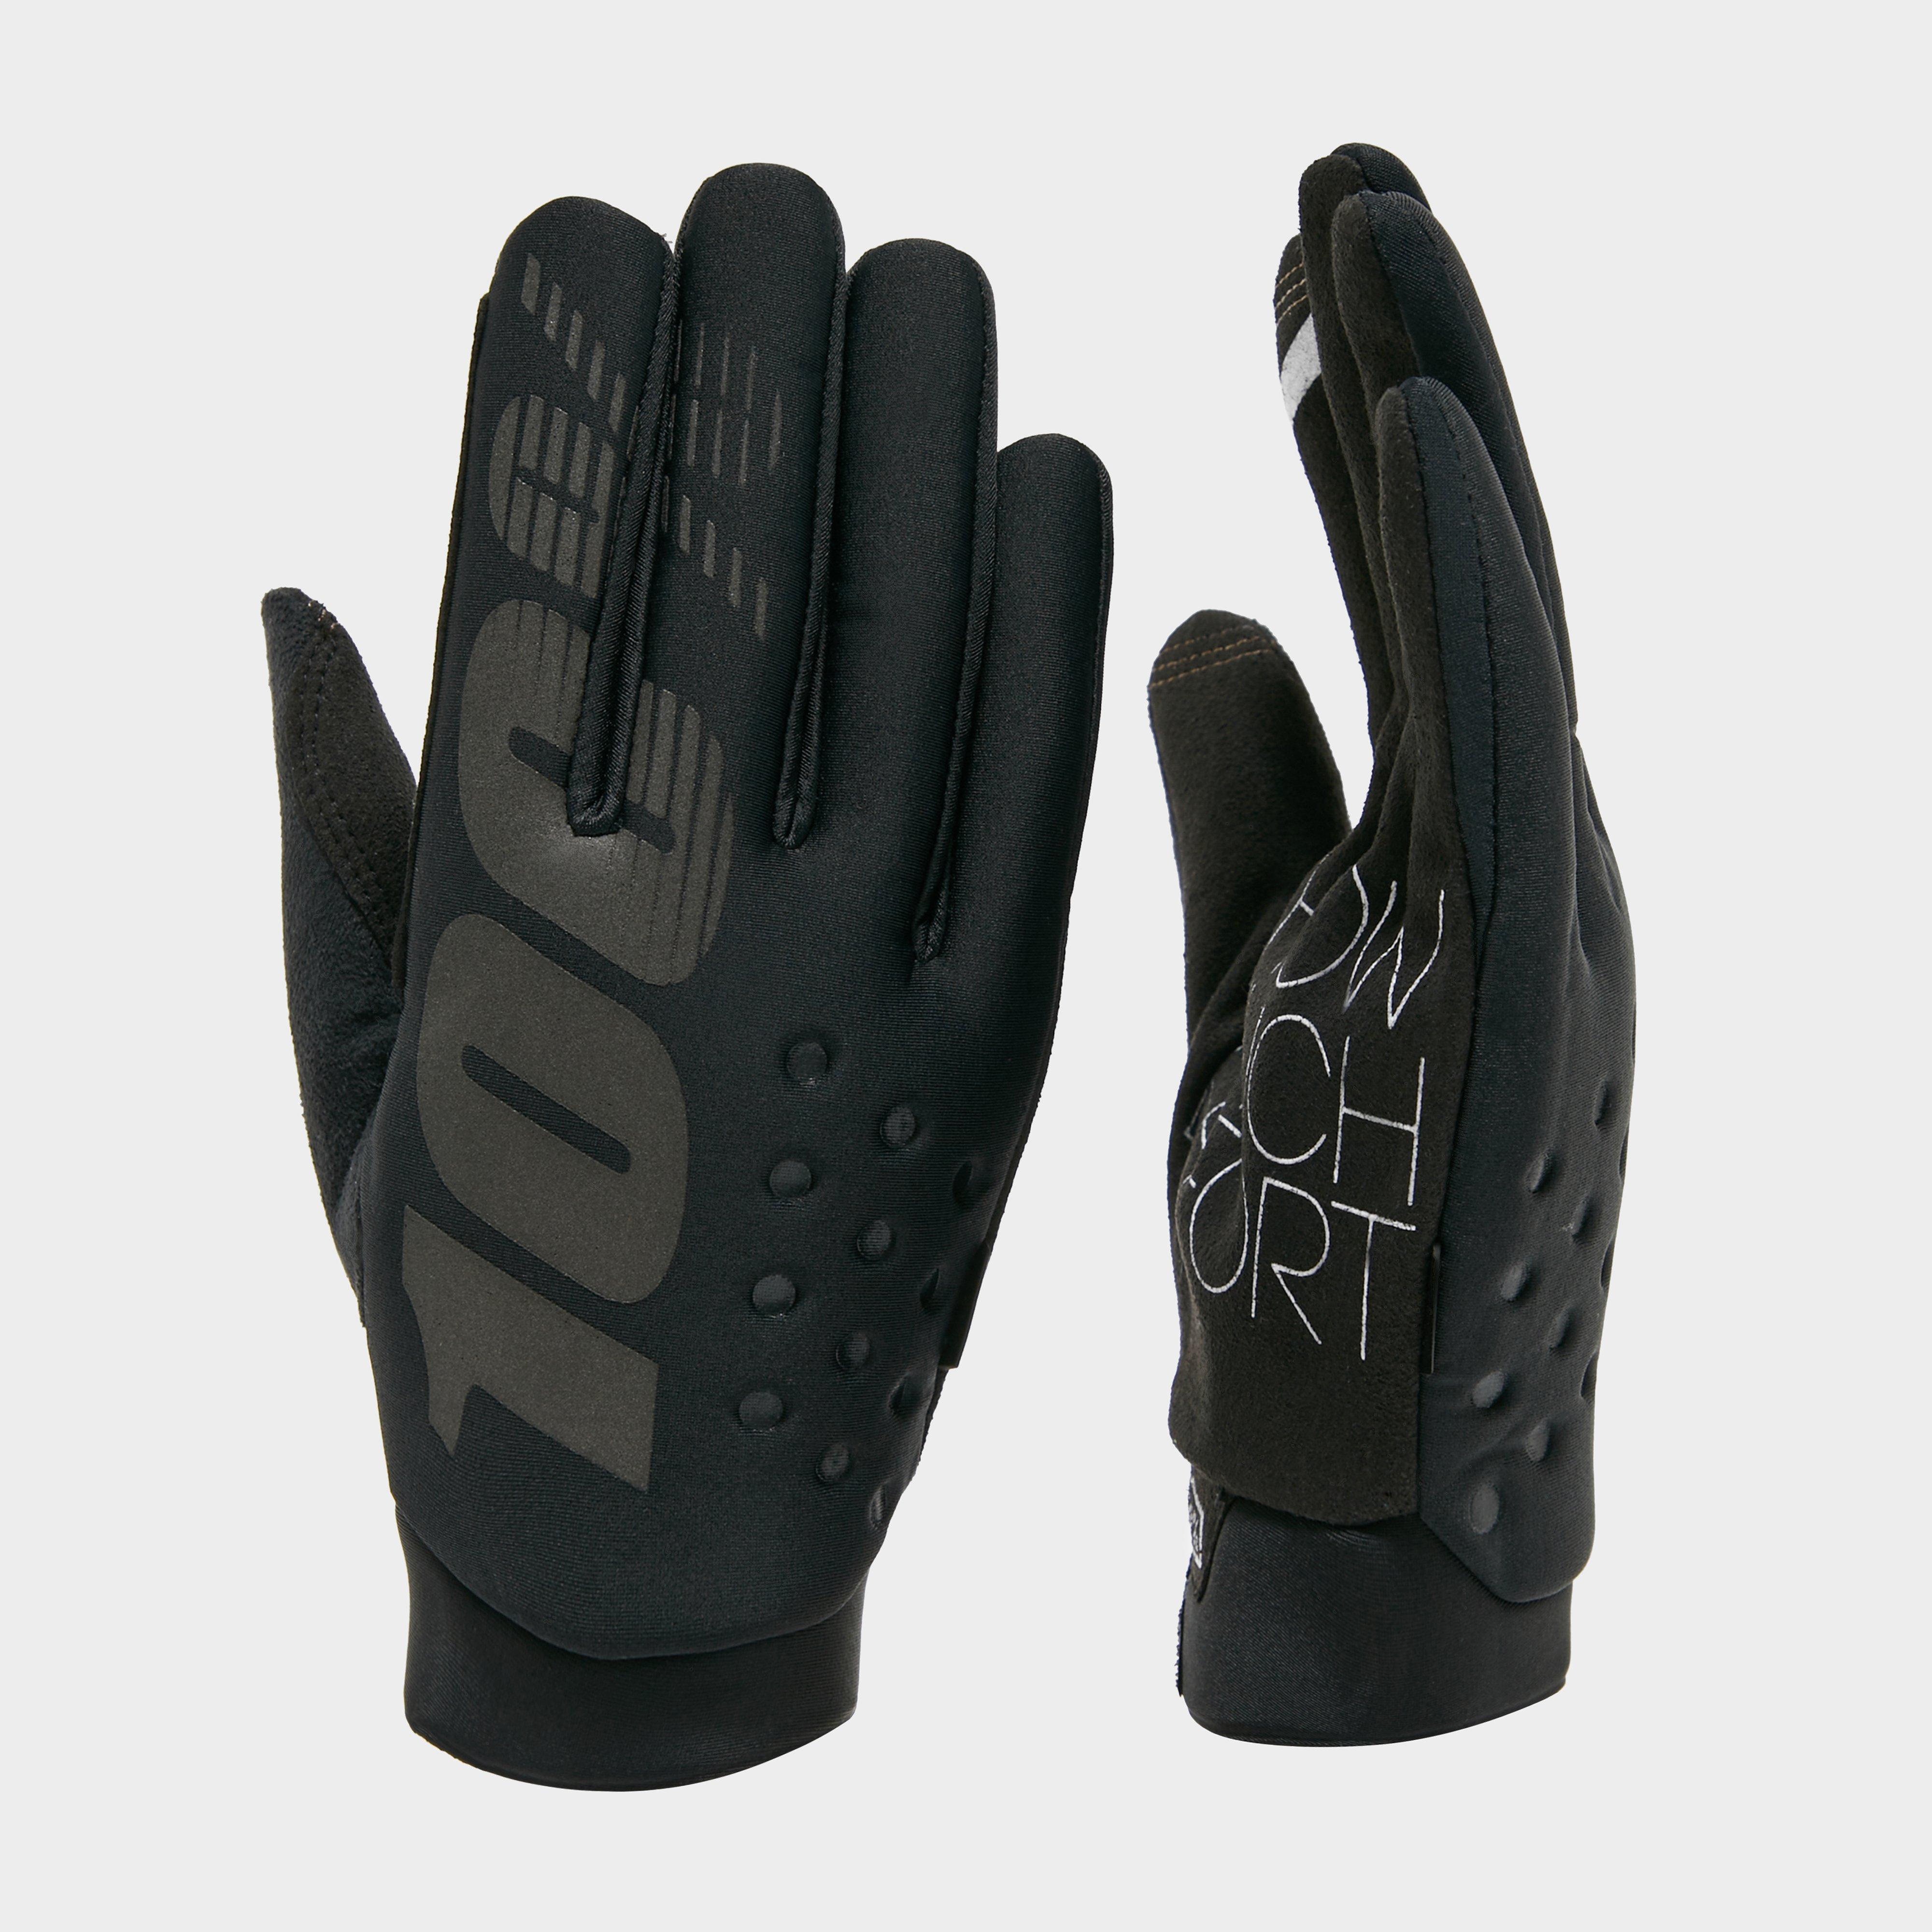 100% Mens Brisker Waterproof Gloves - Black/black  Black/black